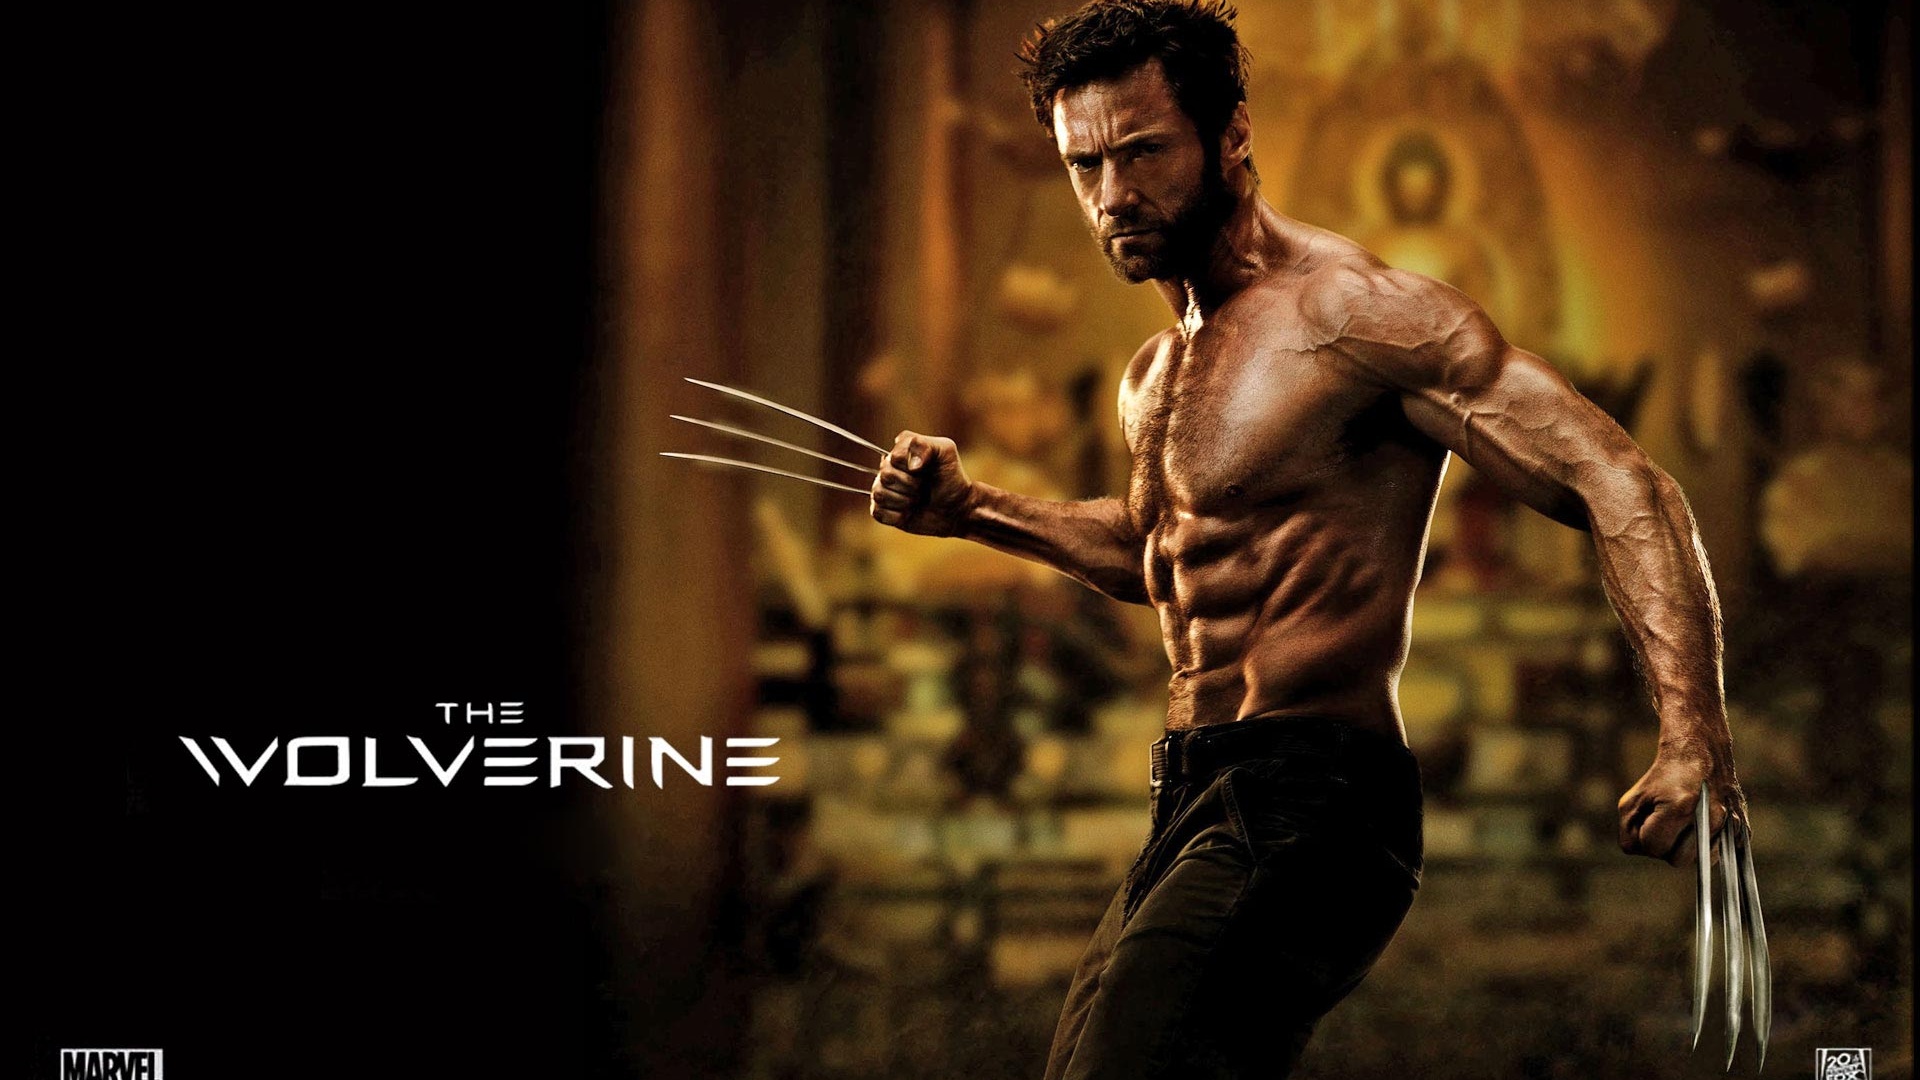 X-Men Origins: Wolverine 2 Wallpaper | 1920x1080 resolution ...